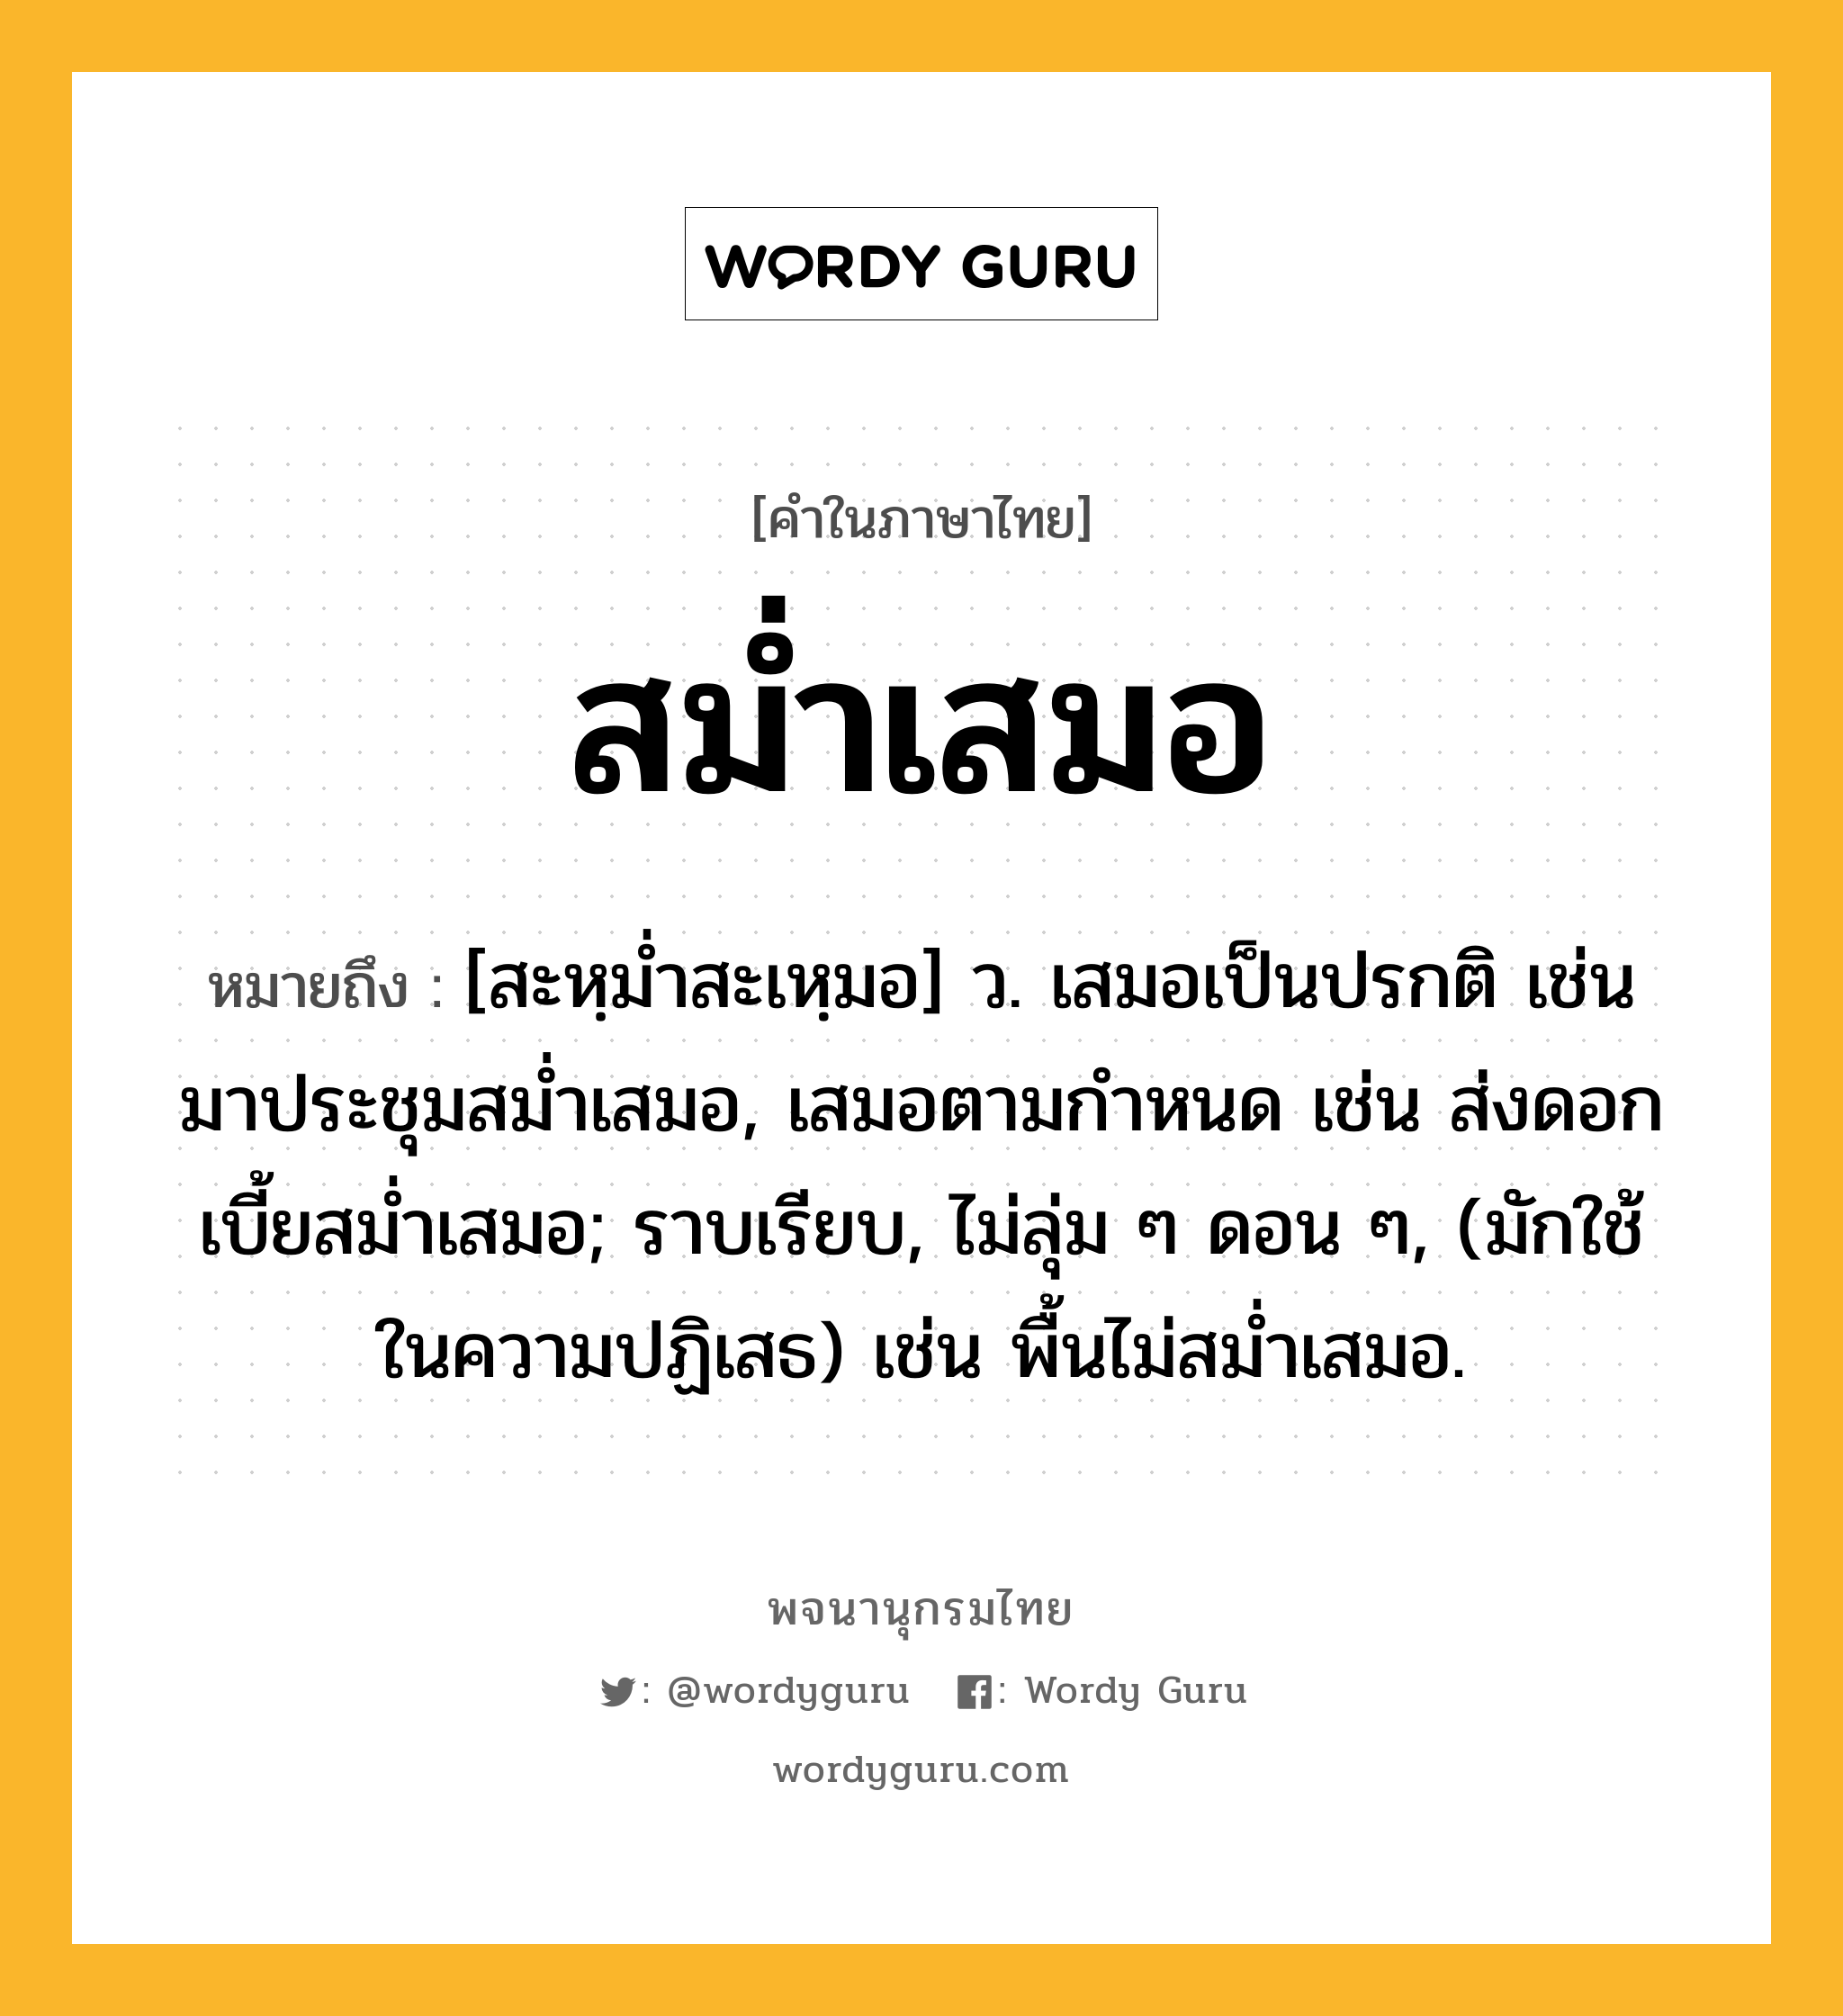 สม่ำเสมอ ความหมาย หมายถึงอะไร?, คำในภาษาไทย สม่ำเสมอ หมายถึง [สะหฺมํ่าสะเหฺมอ] ว. เสมอเป็นปรกติ เช่น มาประชุมสม่ำเสมอ, เสมอตามกำหนด เช่น ส่งดอกเบี้ยสม่ำเสมอ; ราบเรียบ, ไม่ลุ่ม ๆ ดอน ๆ, (มักใช้ในความปฏิเสธ) เช่น พื้นไม่สม่ำเสมอ.